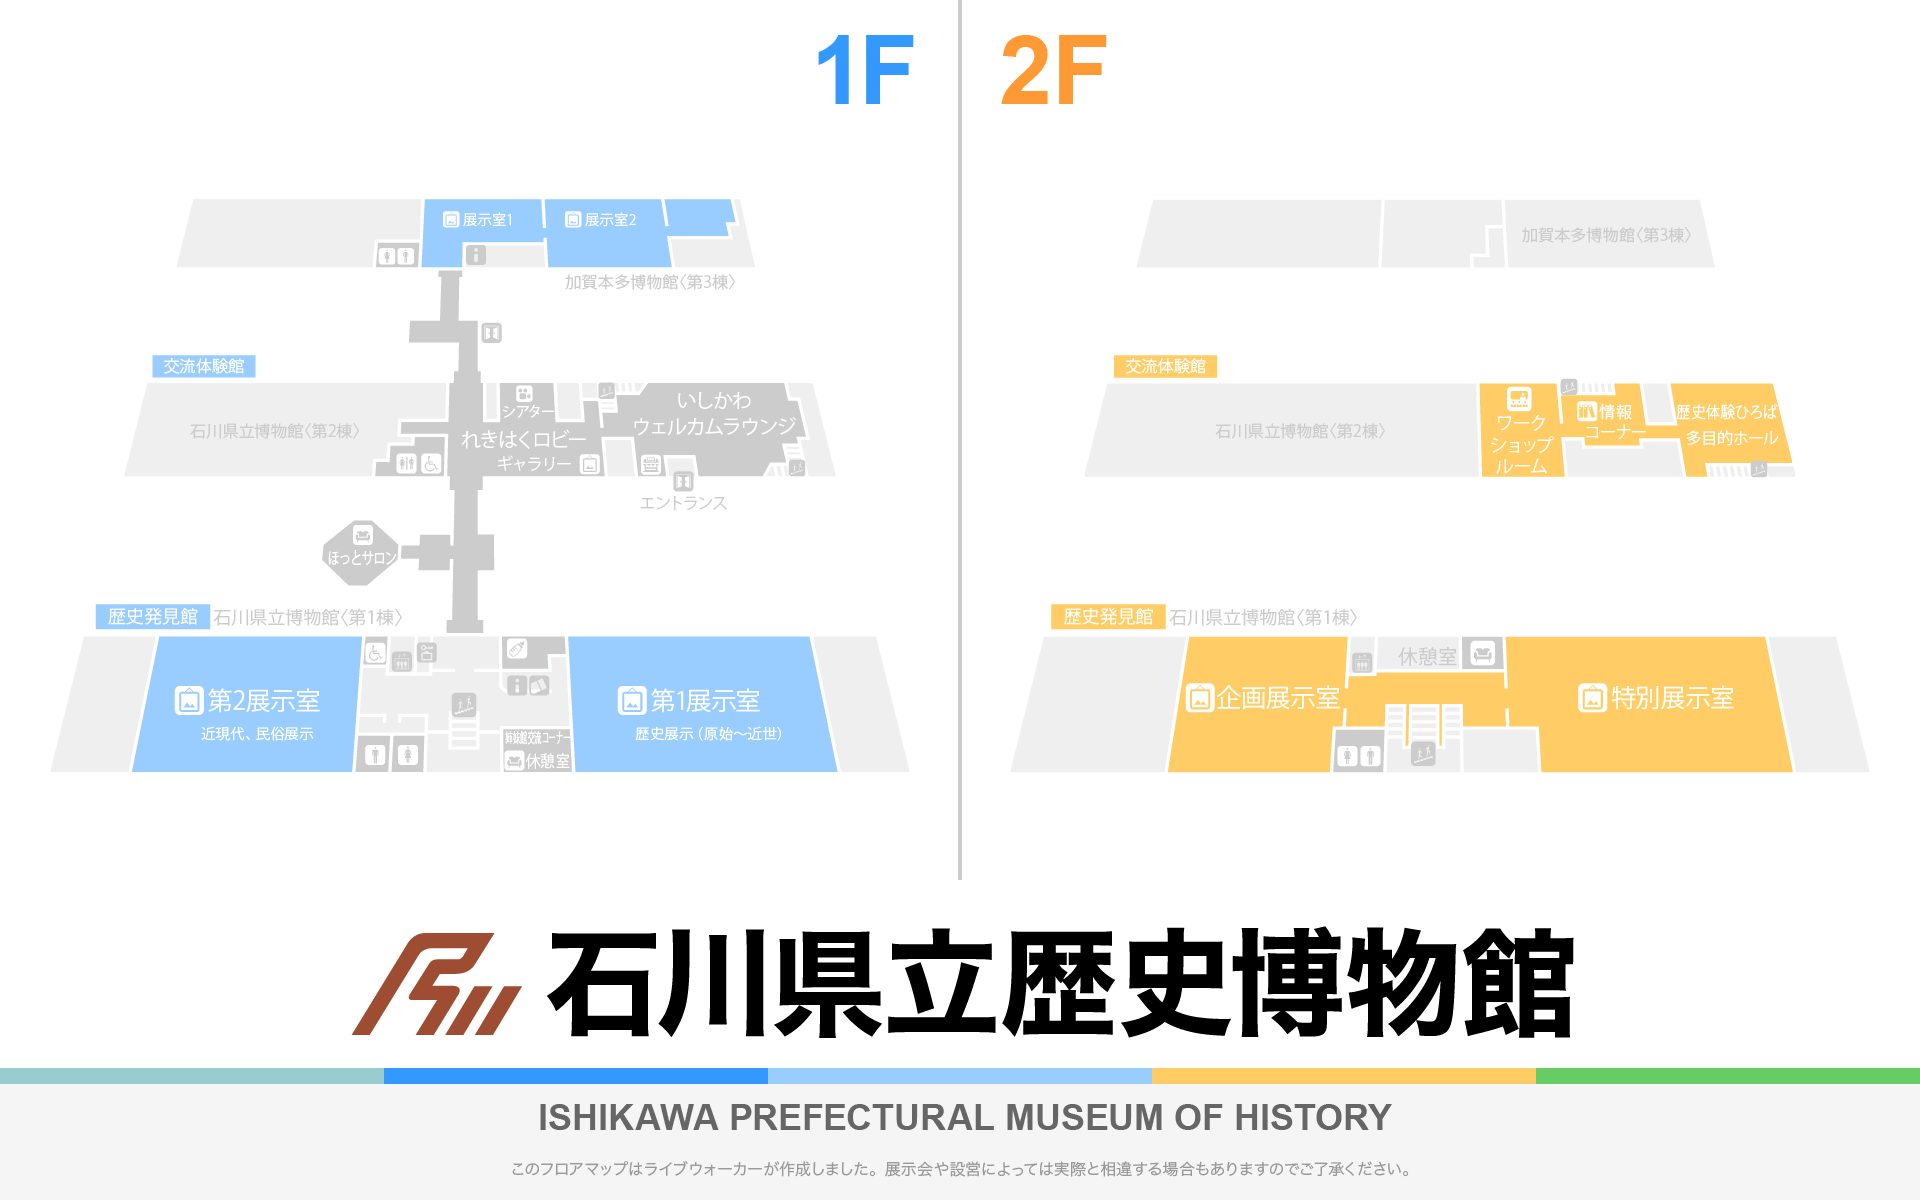 石川県立歴史博物館（いしかわ赤レンガミュージアム）のフロアマップ